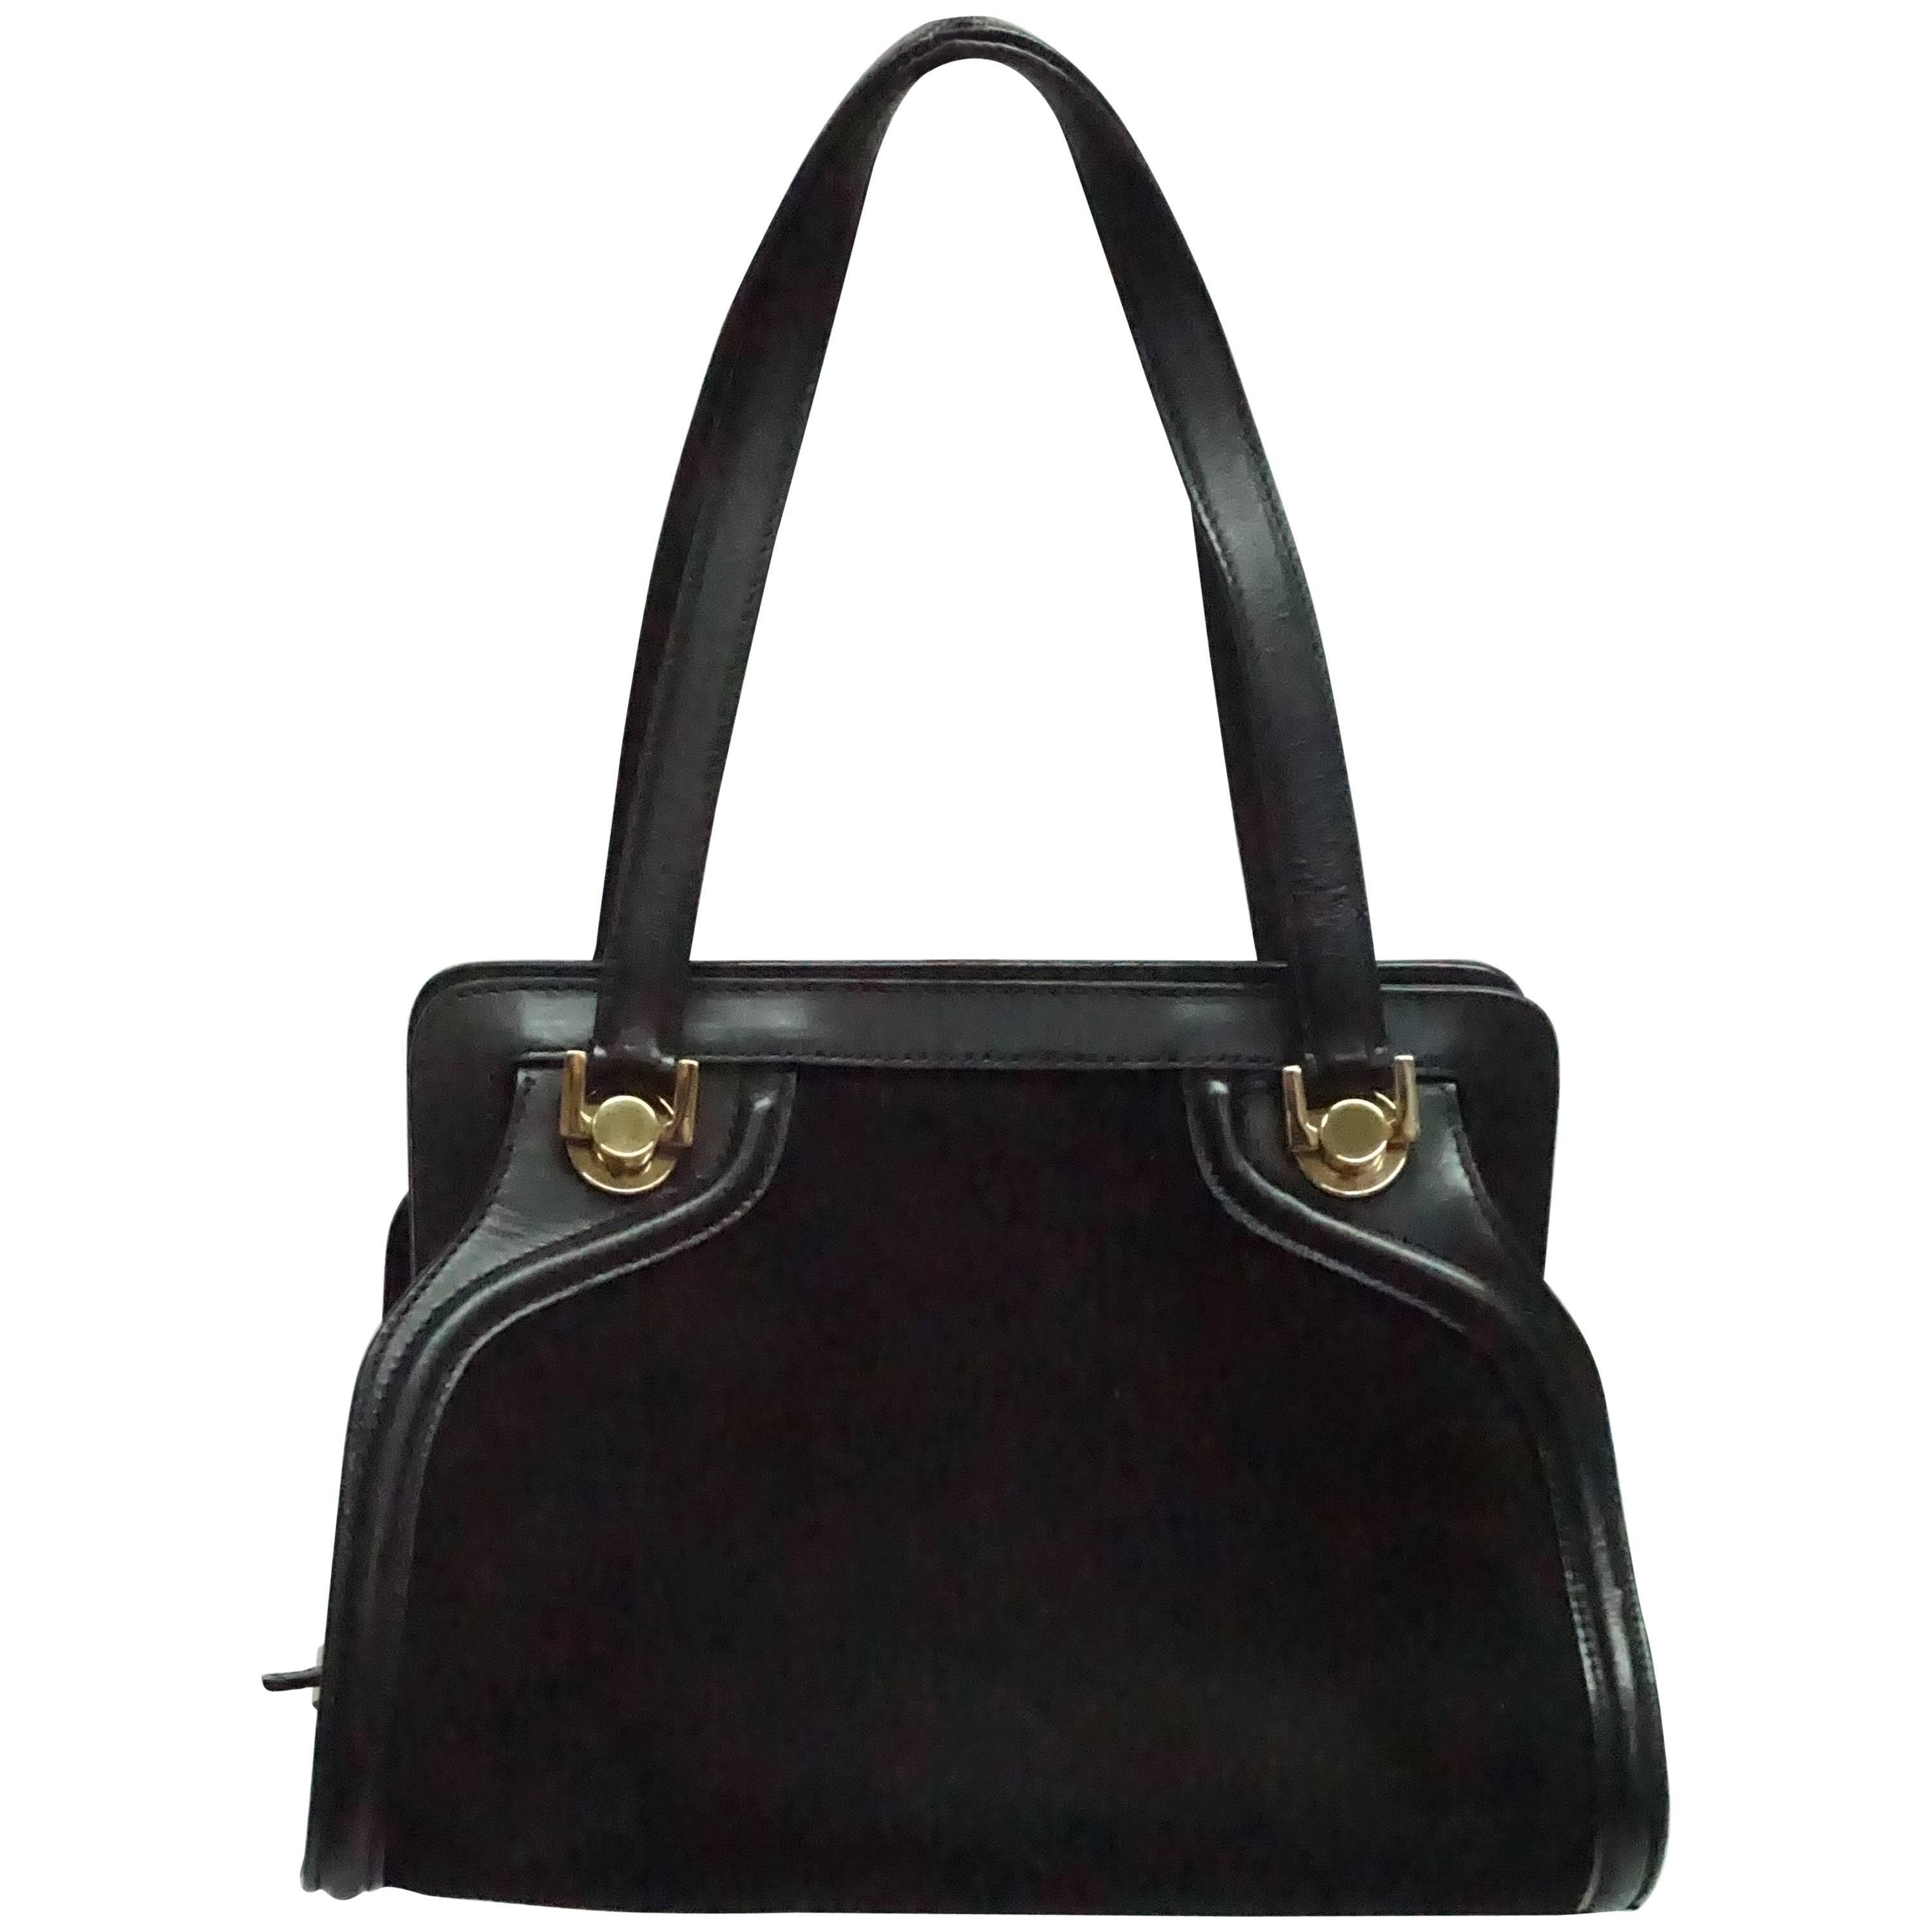 Salvatore Ferragamo Black Suede and Leather Top Handle Handbag